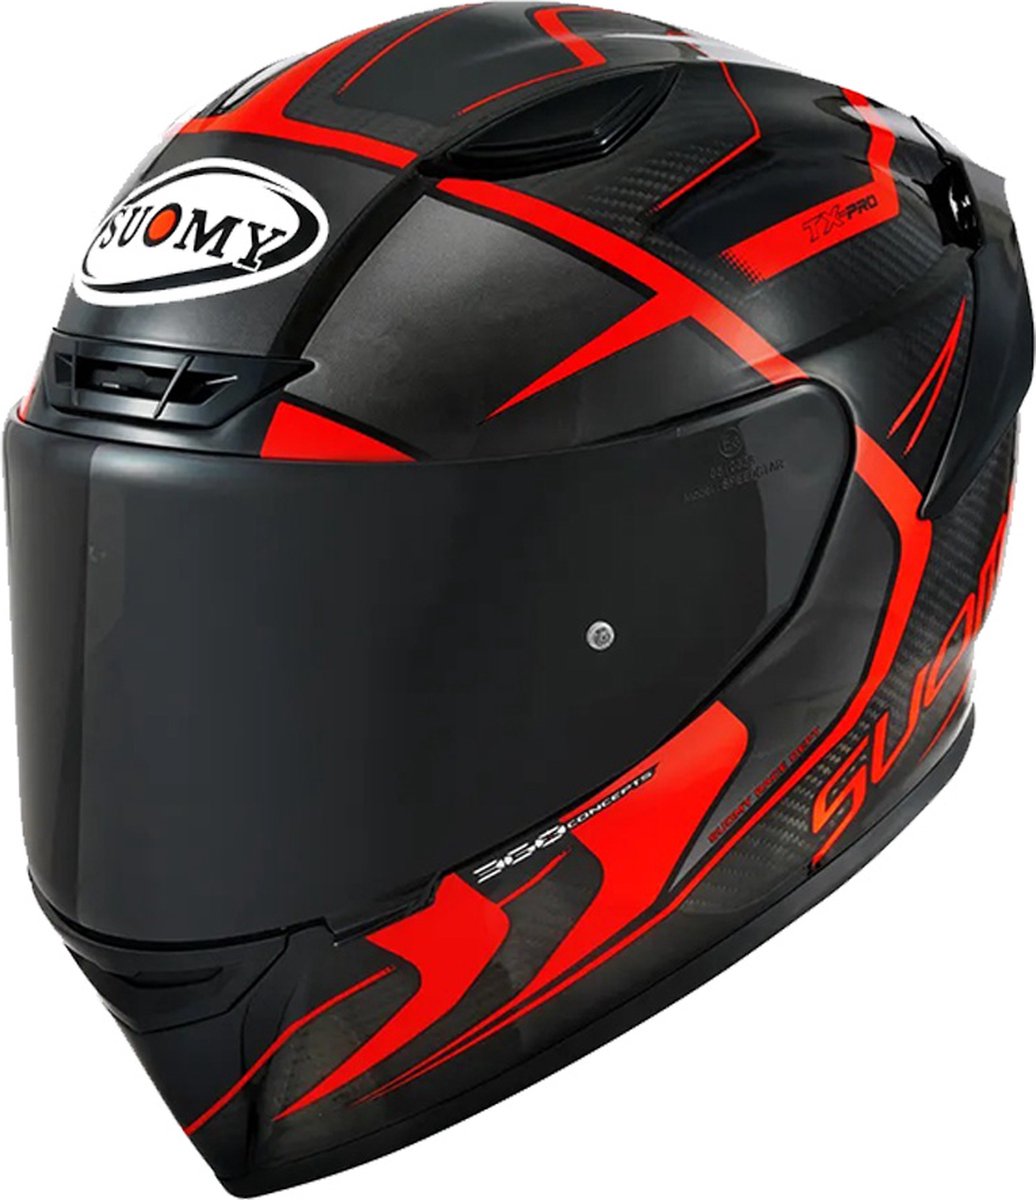 Suomy Tx Pro Advance Ece 22.06 Black Red L - Maat L - Helm